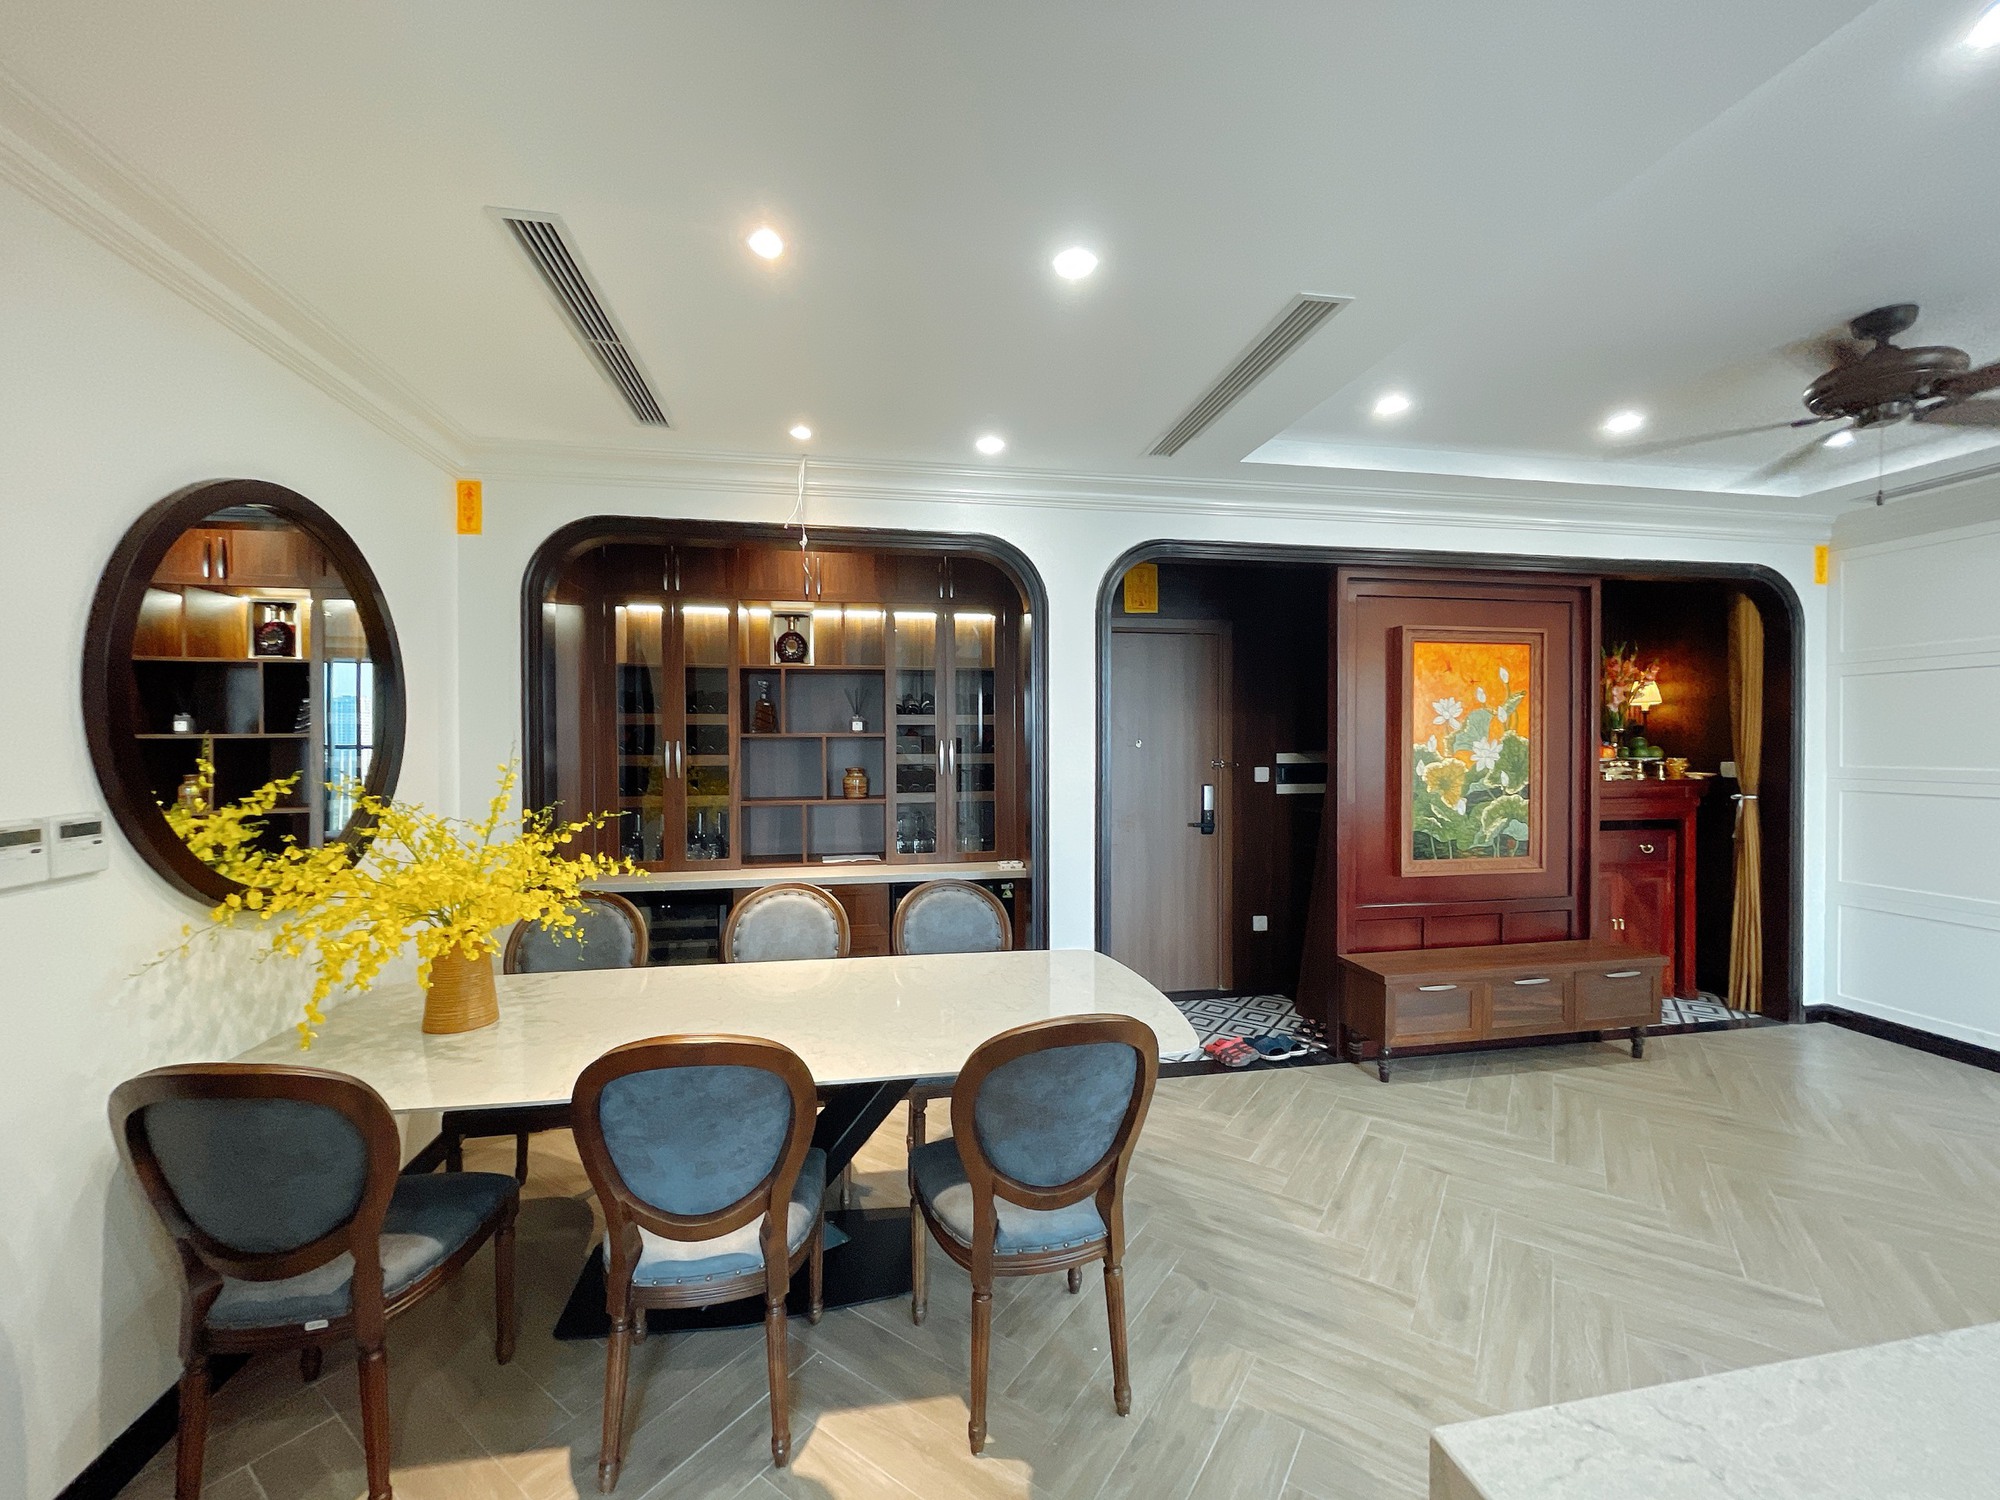 Nữ kiến trúc sư tại Hà Nội chia sẻ kinh nghiệm chọn mua nhà chung cư hoàn hảo hơn  - Ảnh 4.